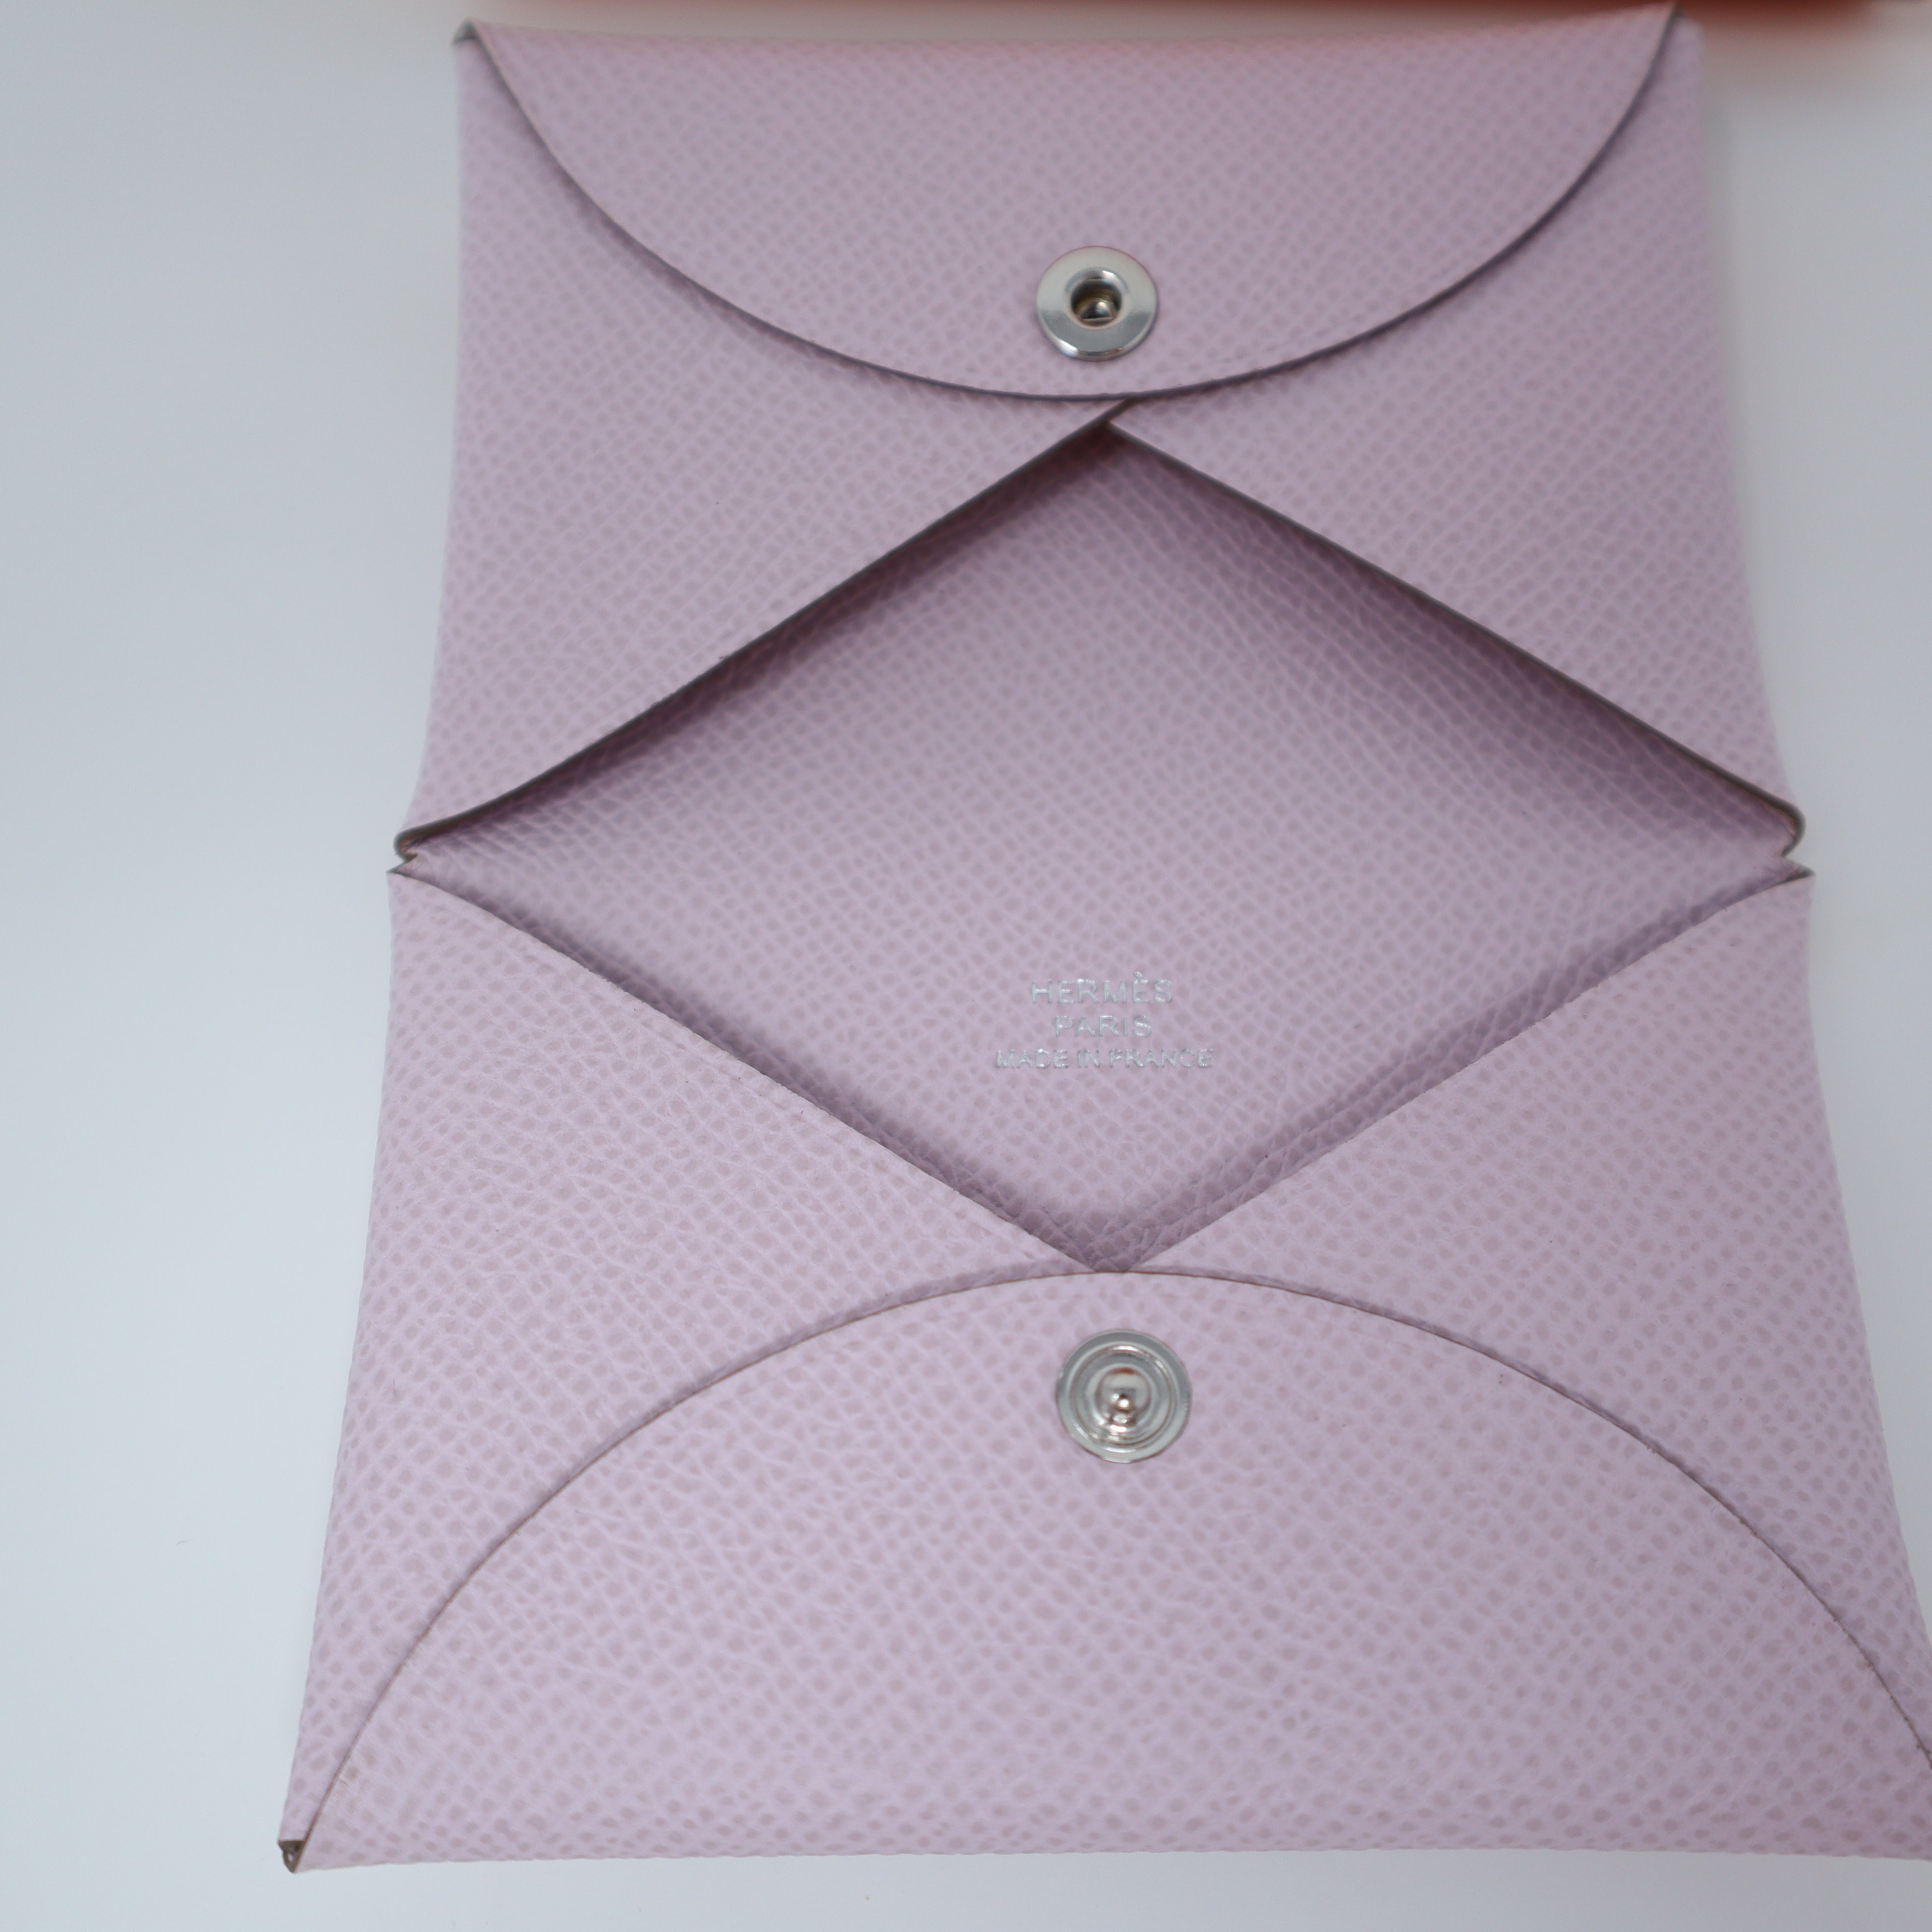 Purple Hermes Calvi Card Holder – Designer Revival